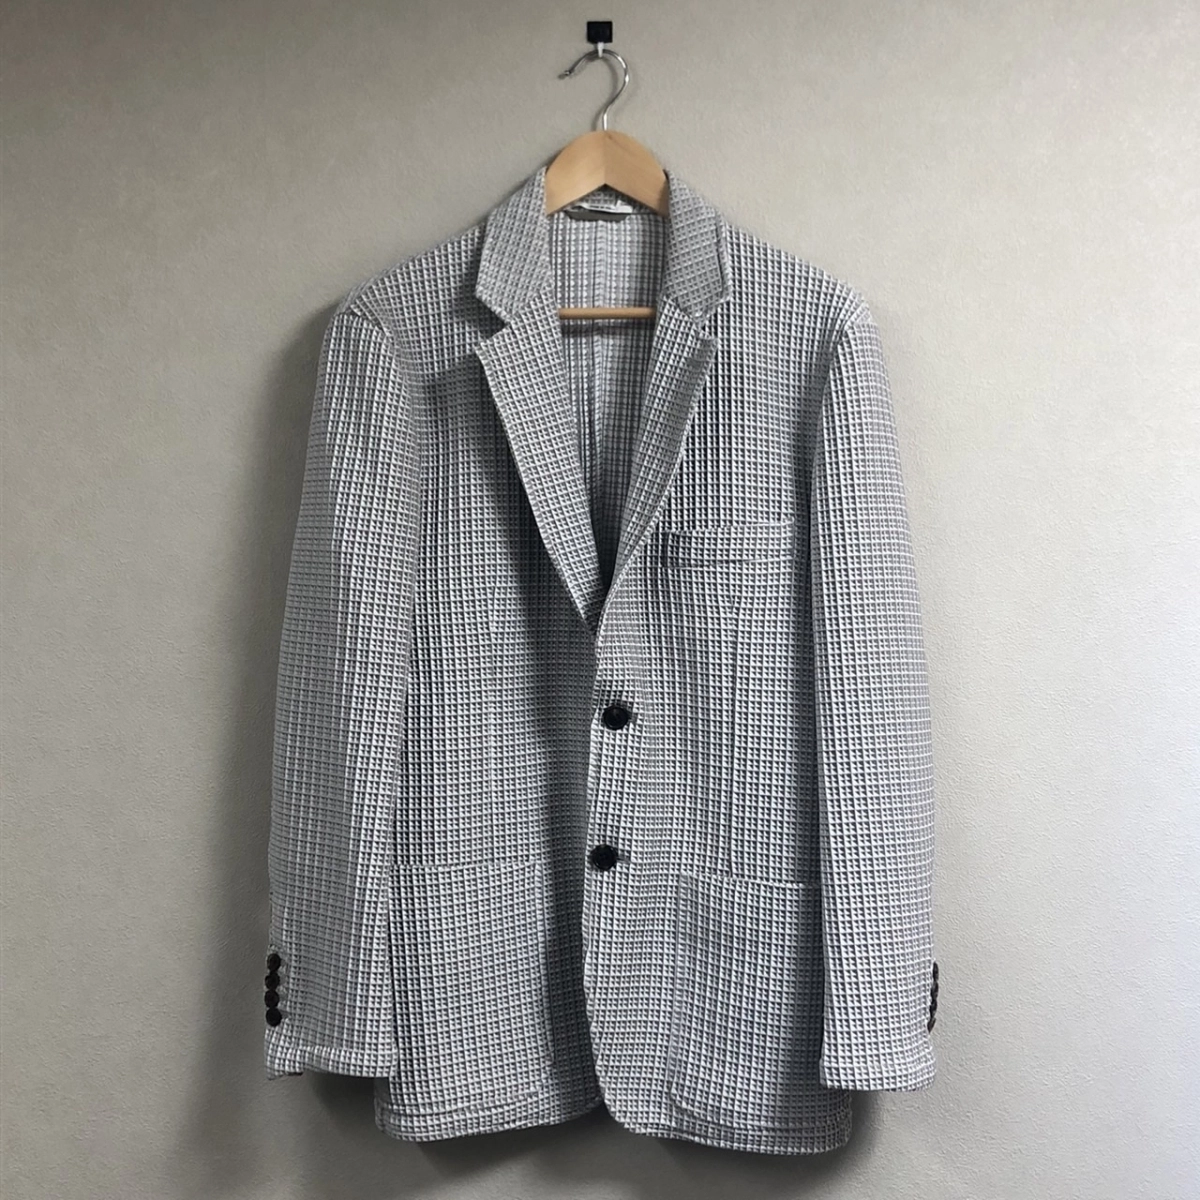 神戸三宮店にて、エルメスのエンボス加工総柄テーラードジャケット・G19956を高価買取いたしました。状態は綺麗な状態のお品物です。